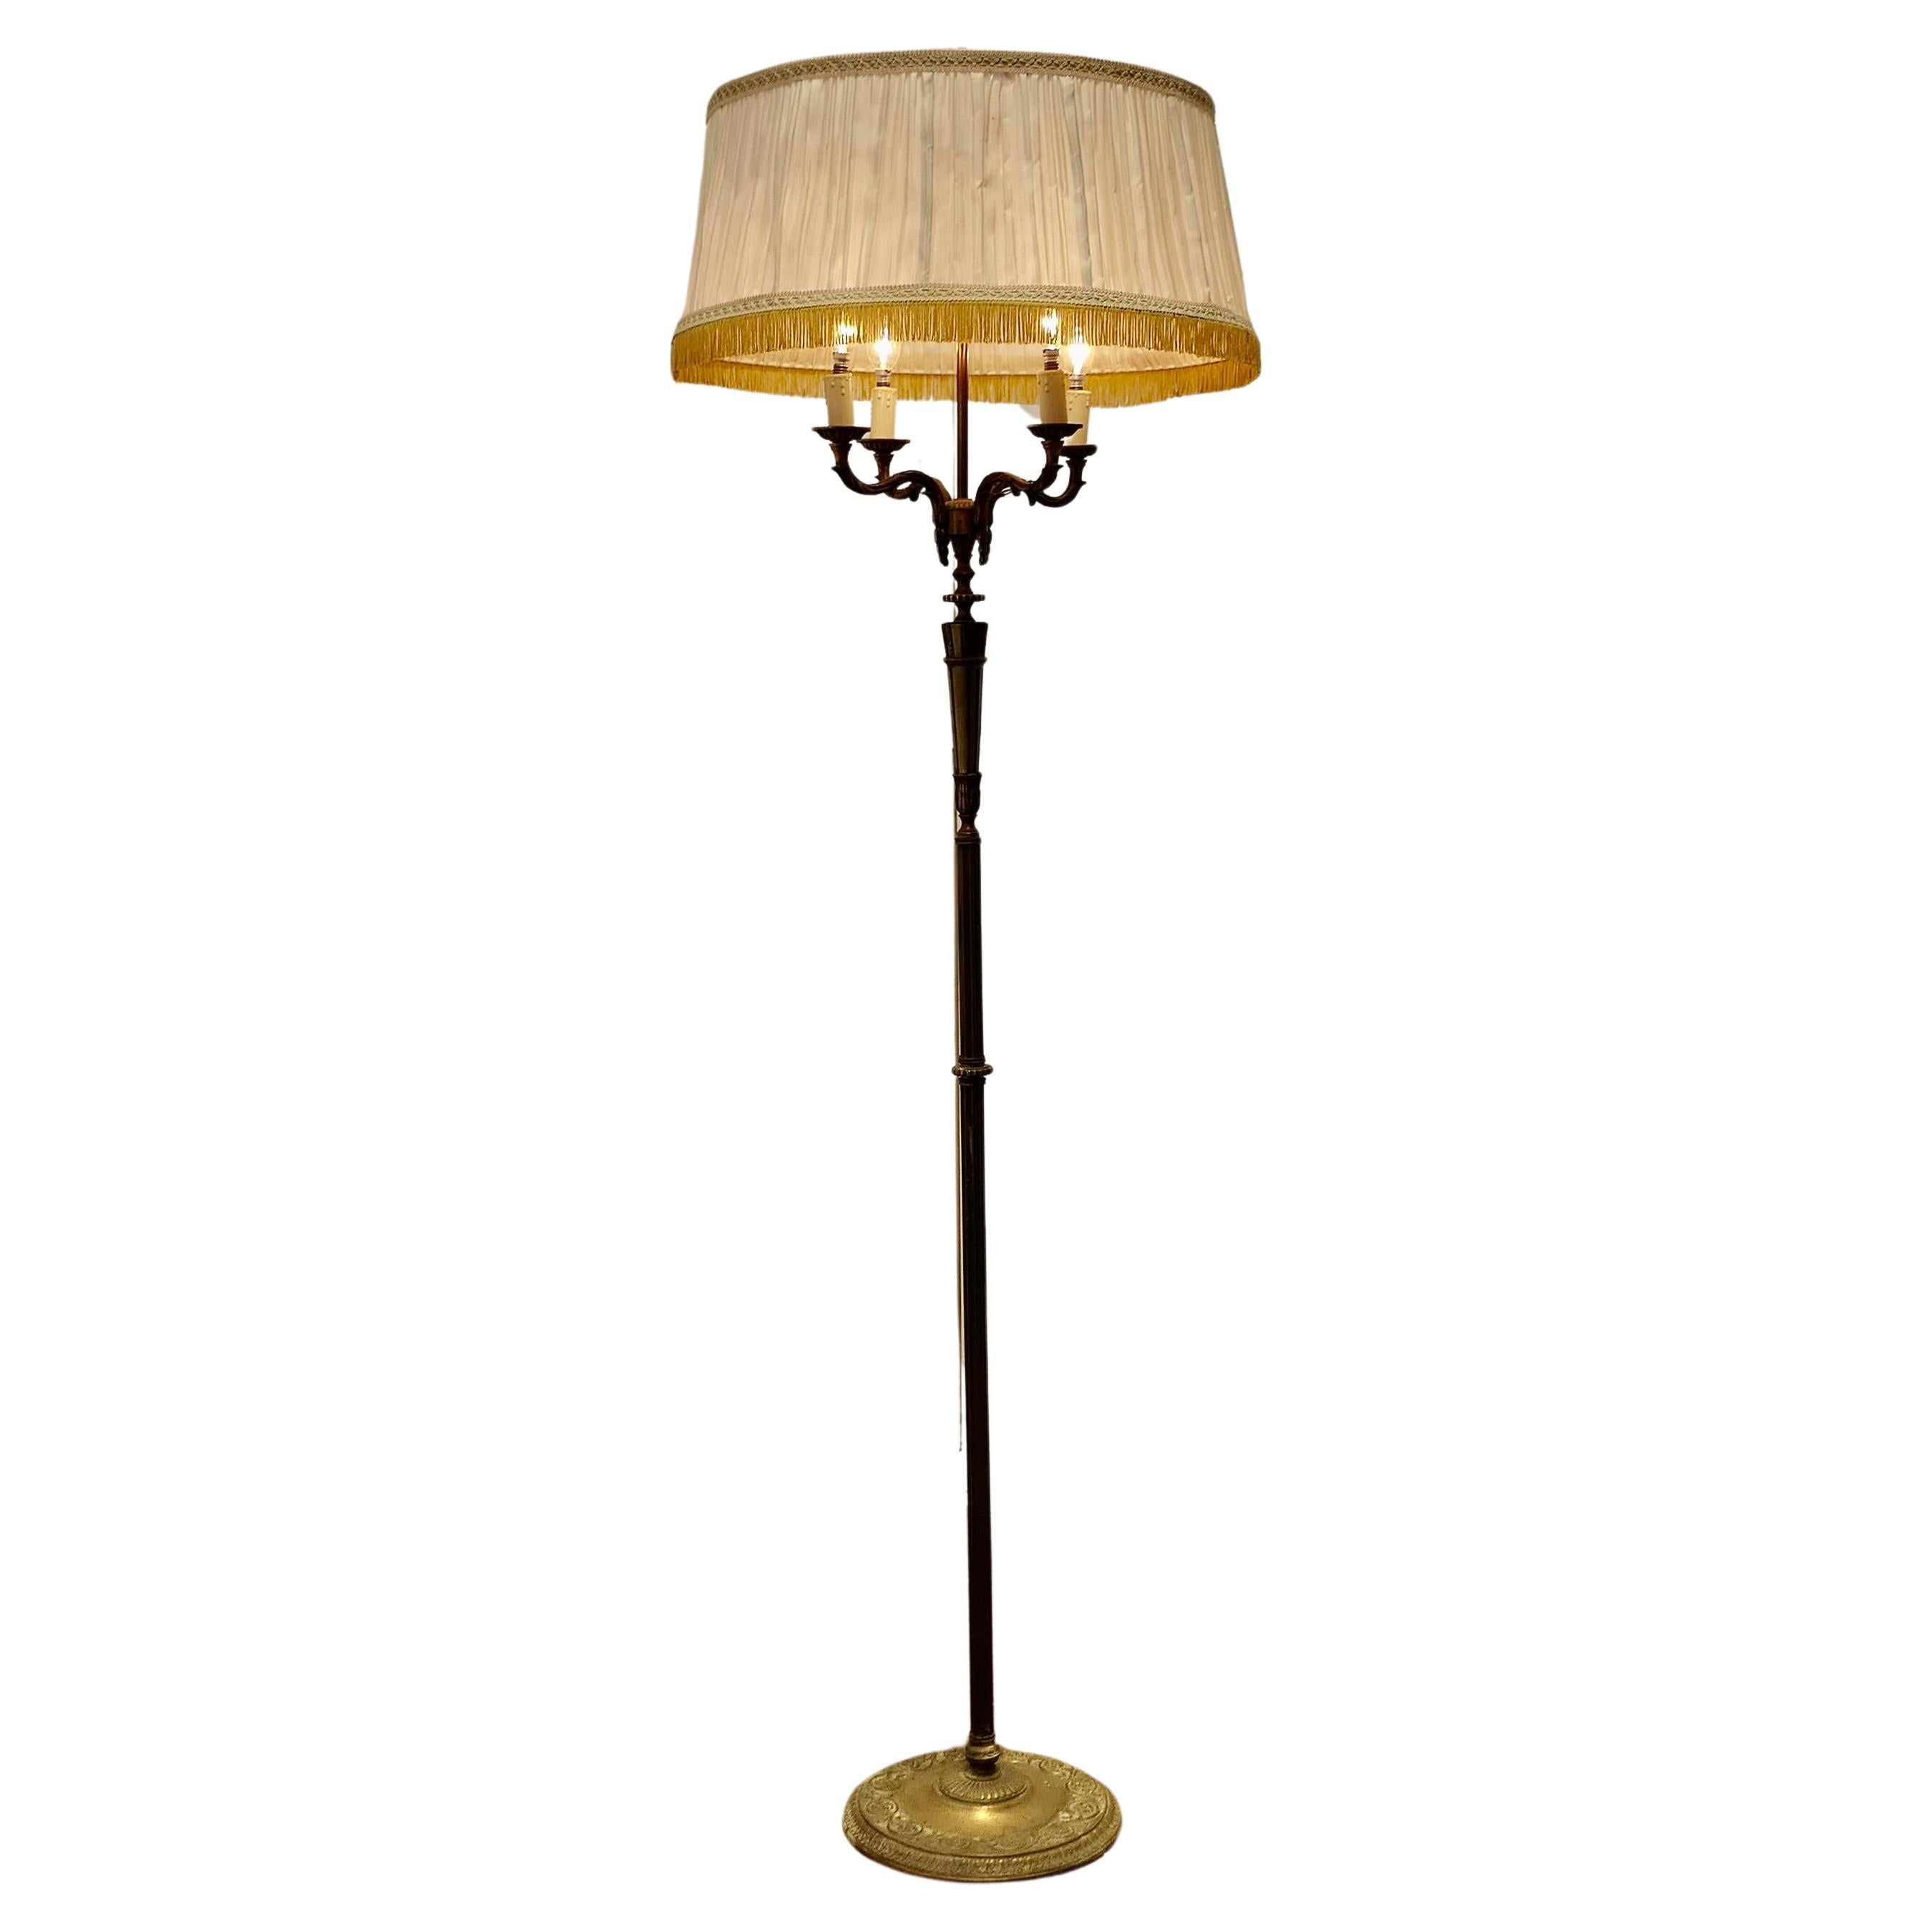 Lampadaire Rococo en laiton doré à 4 branches, Standard Lamp  C'est un élab